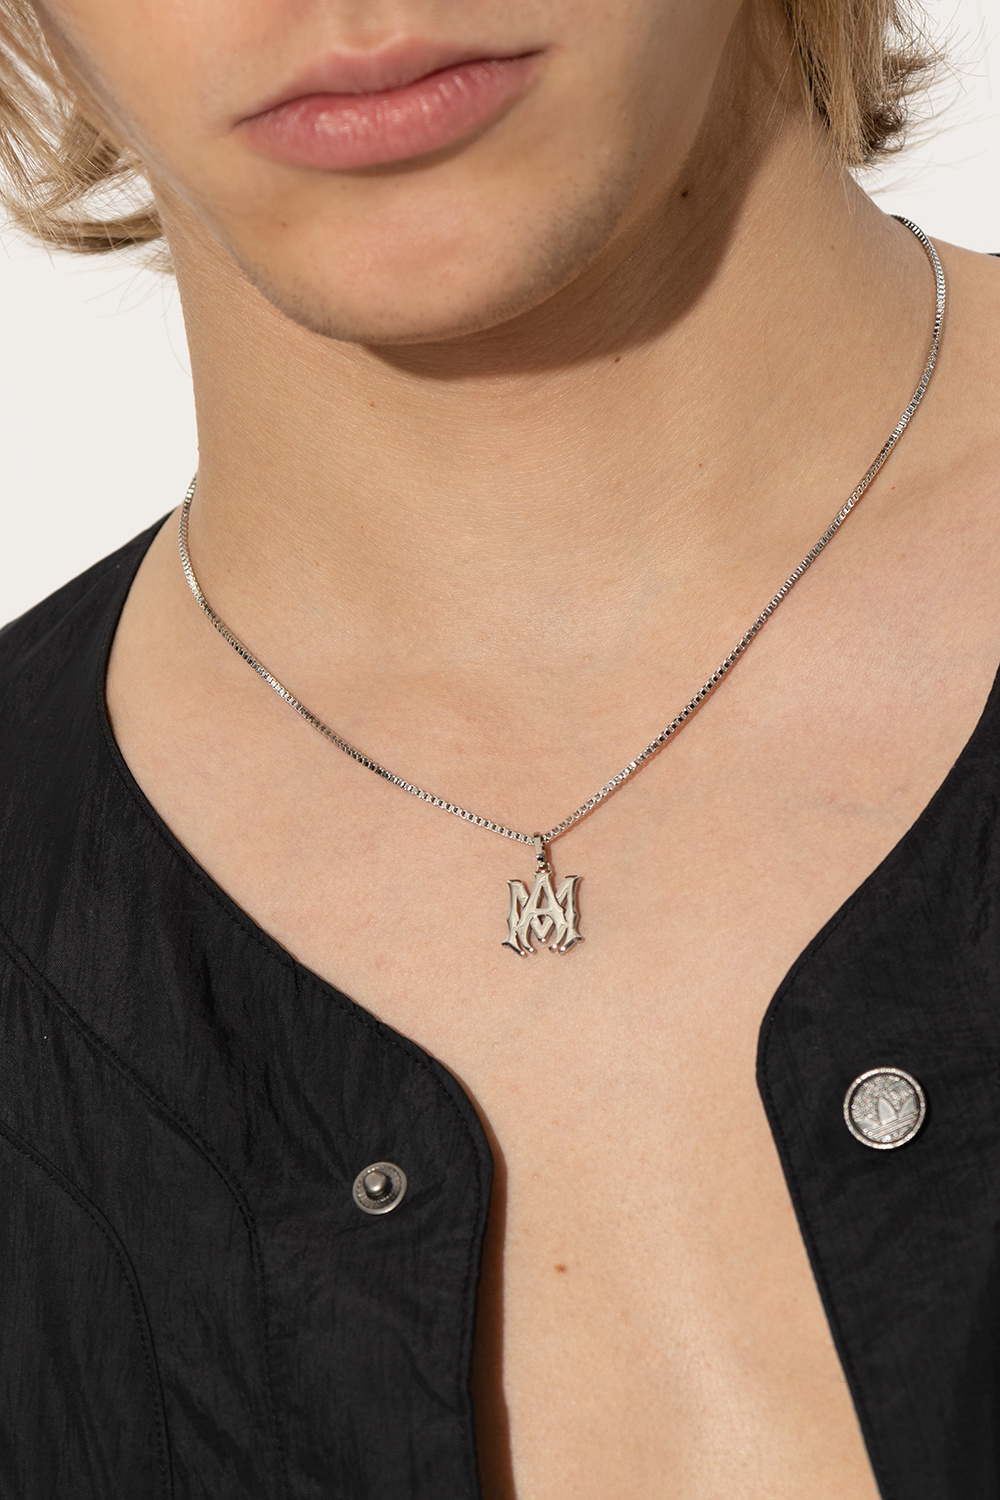 Silver Necklace with logo Amiri - GenesinlifeShops Italy